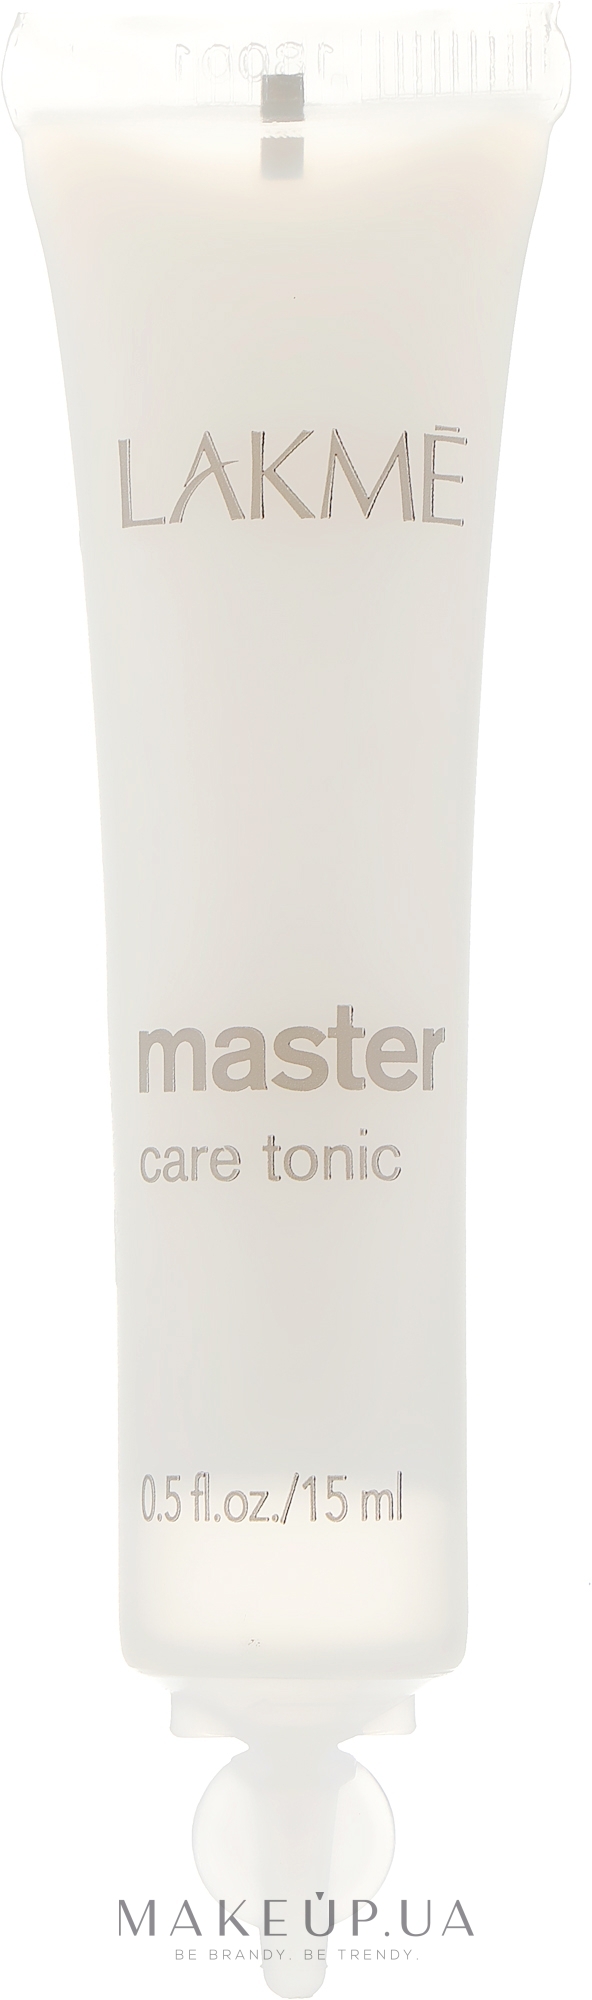 Тоник для ухода за волосами - Lakme Master Care Tonic — фото 1x15ml